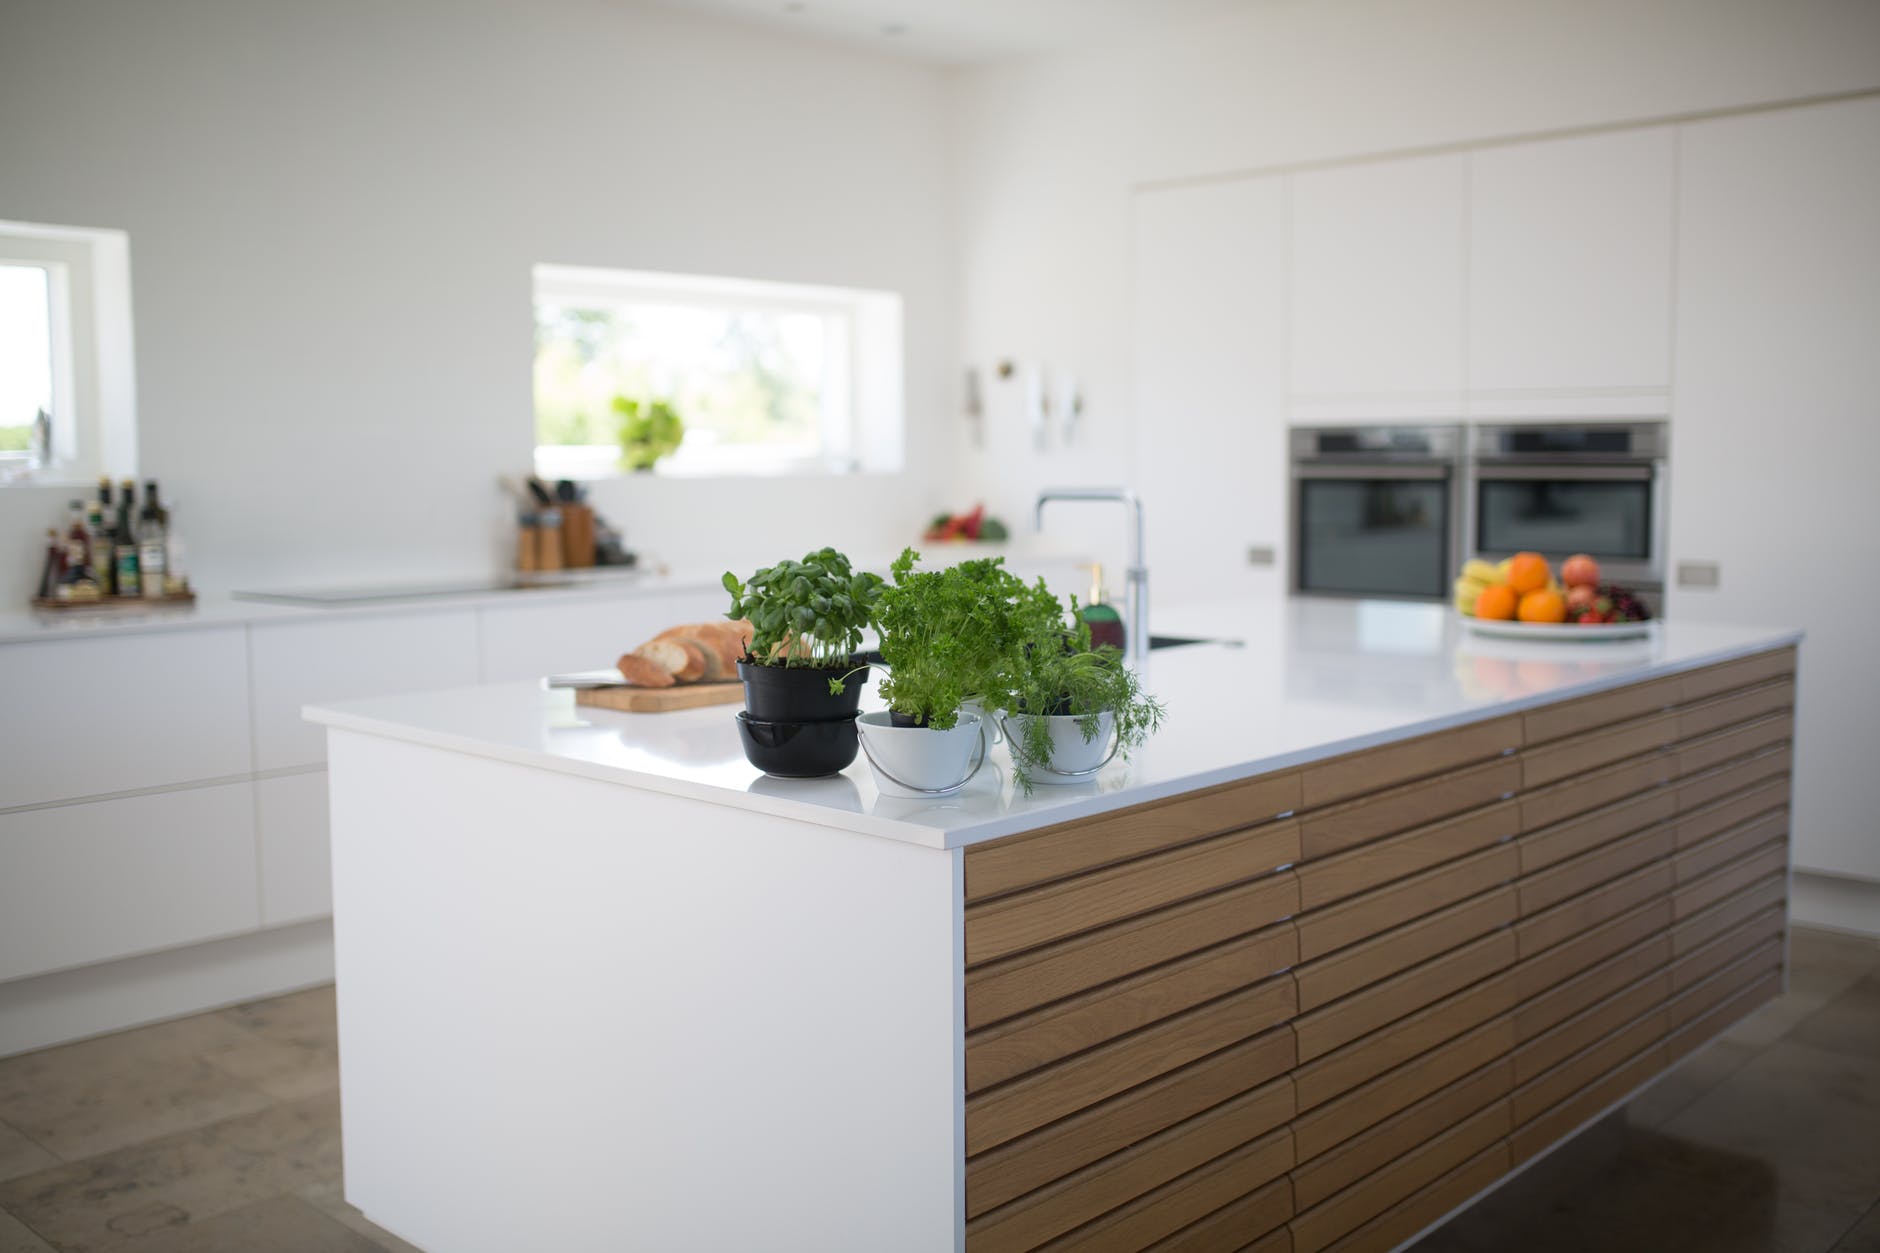 اصول طراحی کابینت در آشپزخانه | 6 اصل مهم در طراحی کابینت آشپزخانه